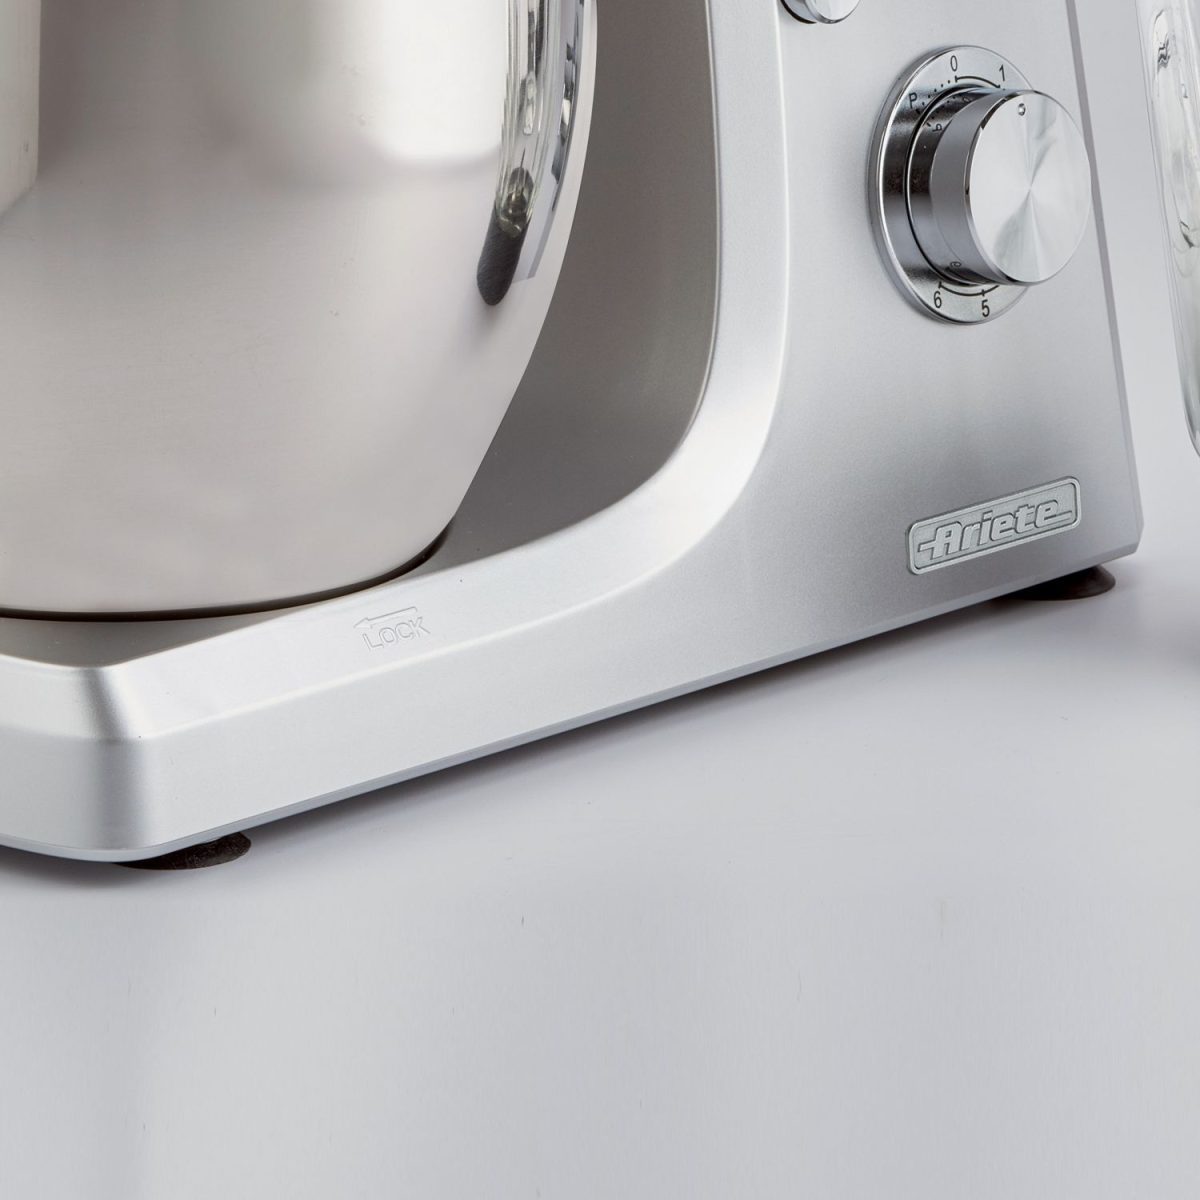 Мултифункционален кухненски робот Gourmet Професионален сребърен миксер, разположен върху бяла повърхност.